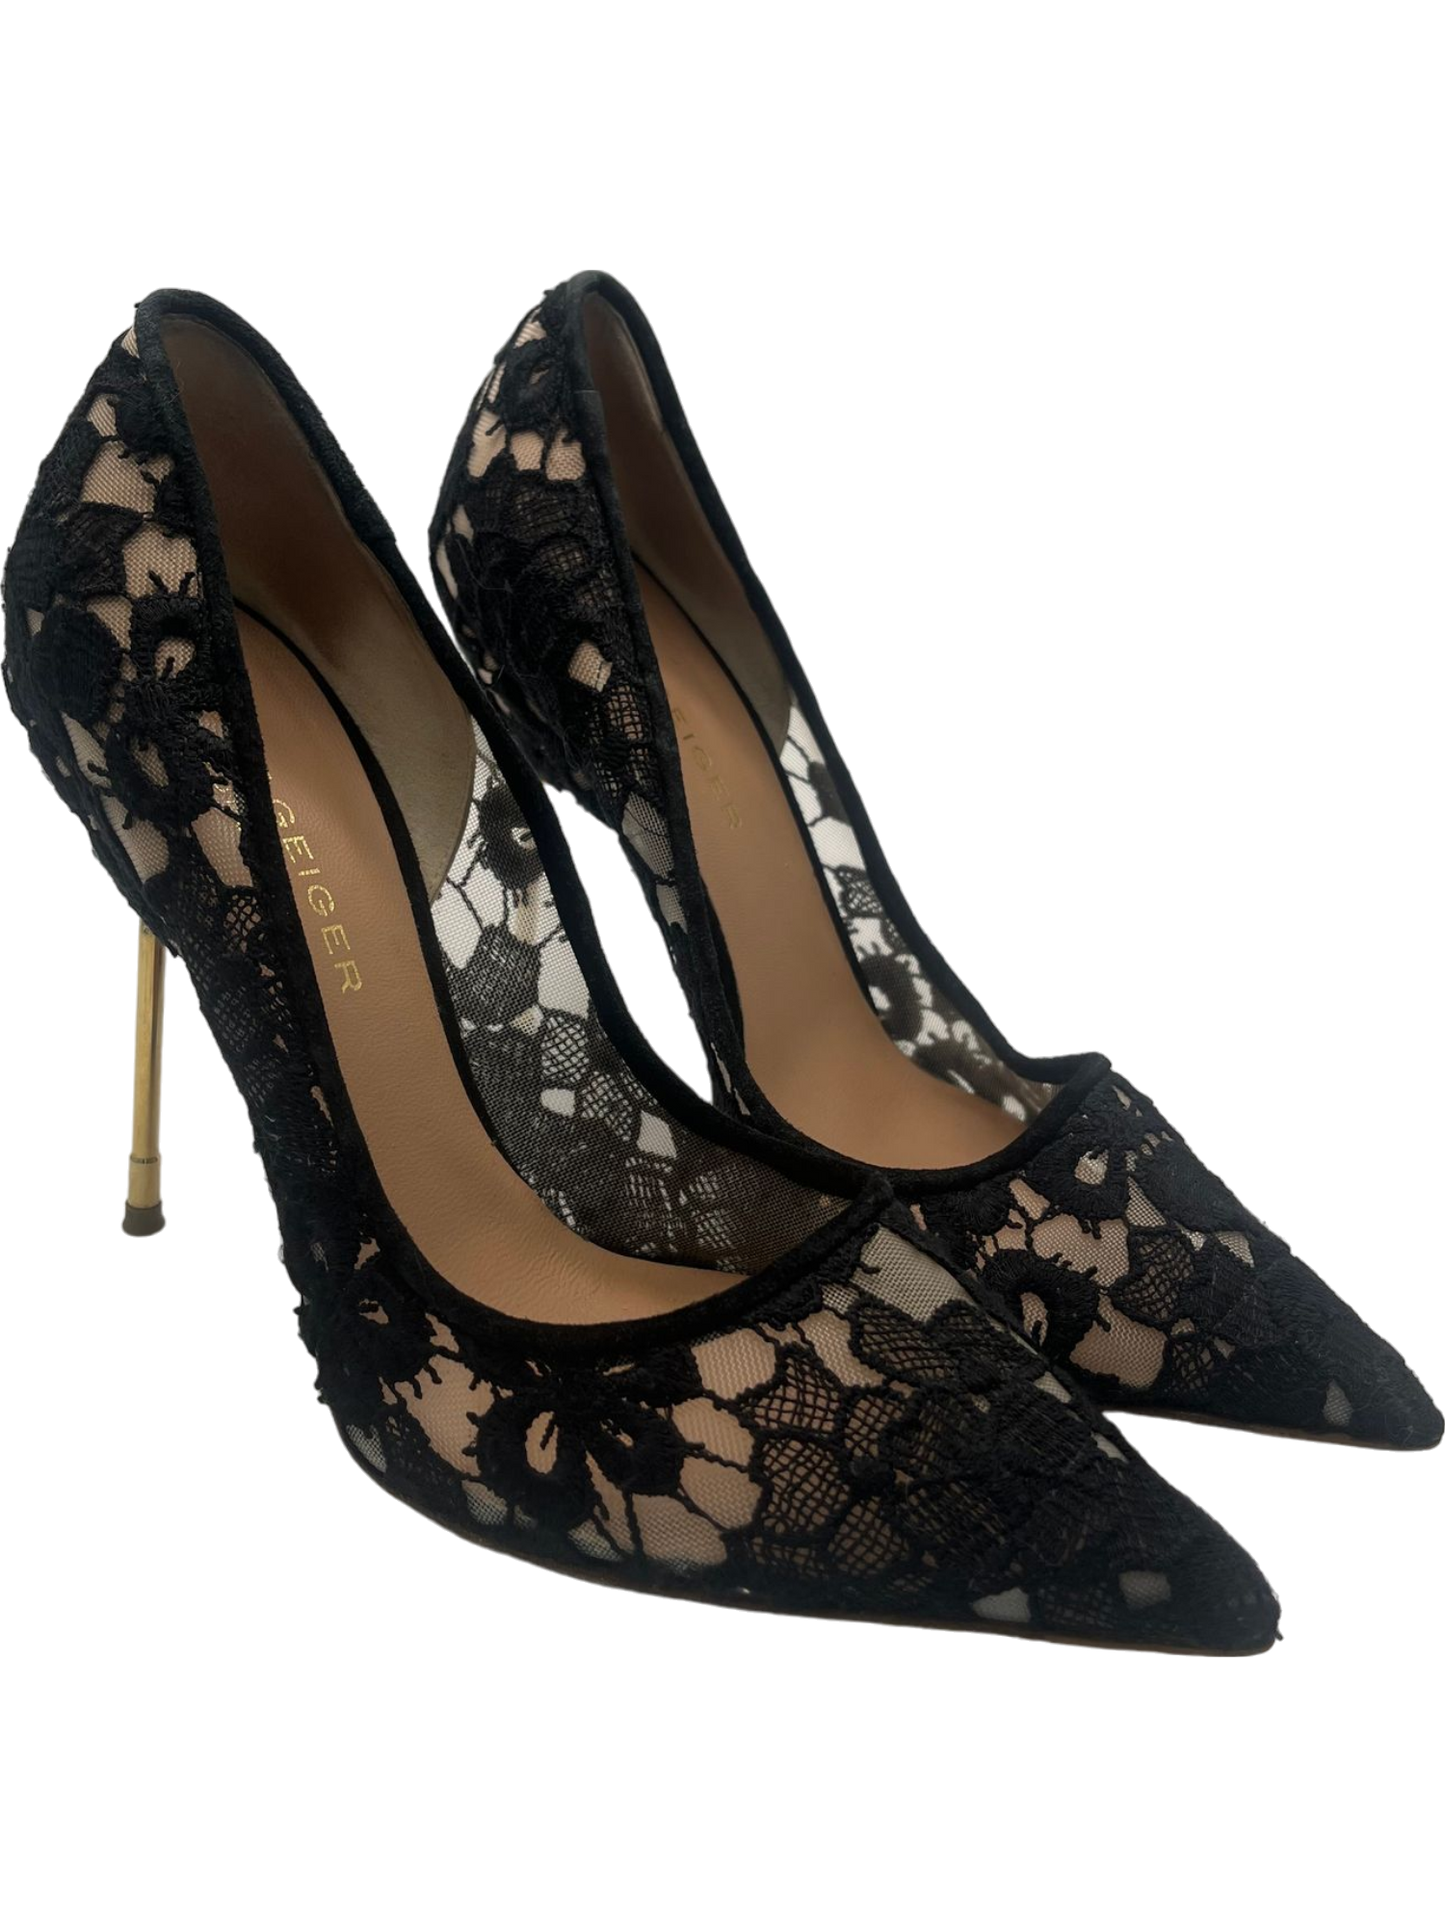 Kurt Geiger Black Lace High Heeled Pointed Toe Stiletto Shoes UK 7